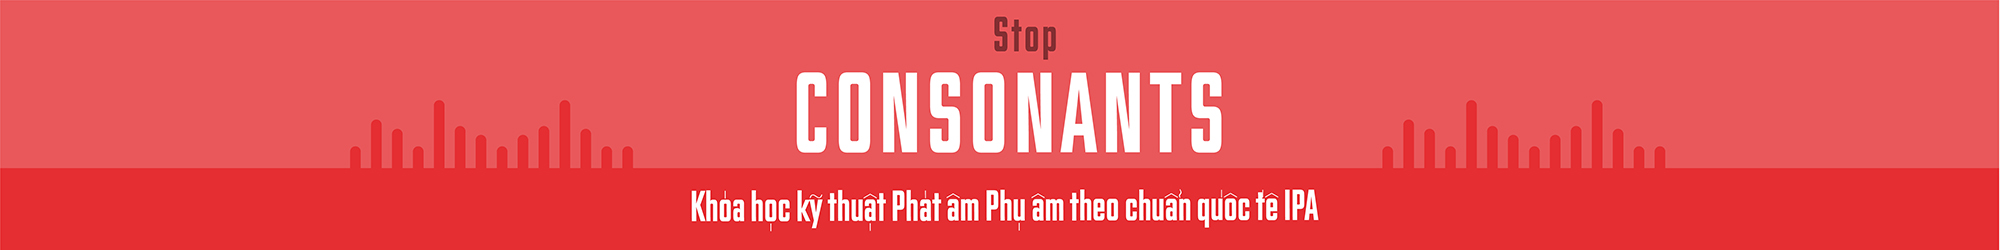 Stop Consonants in the IPA banner